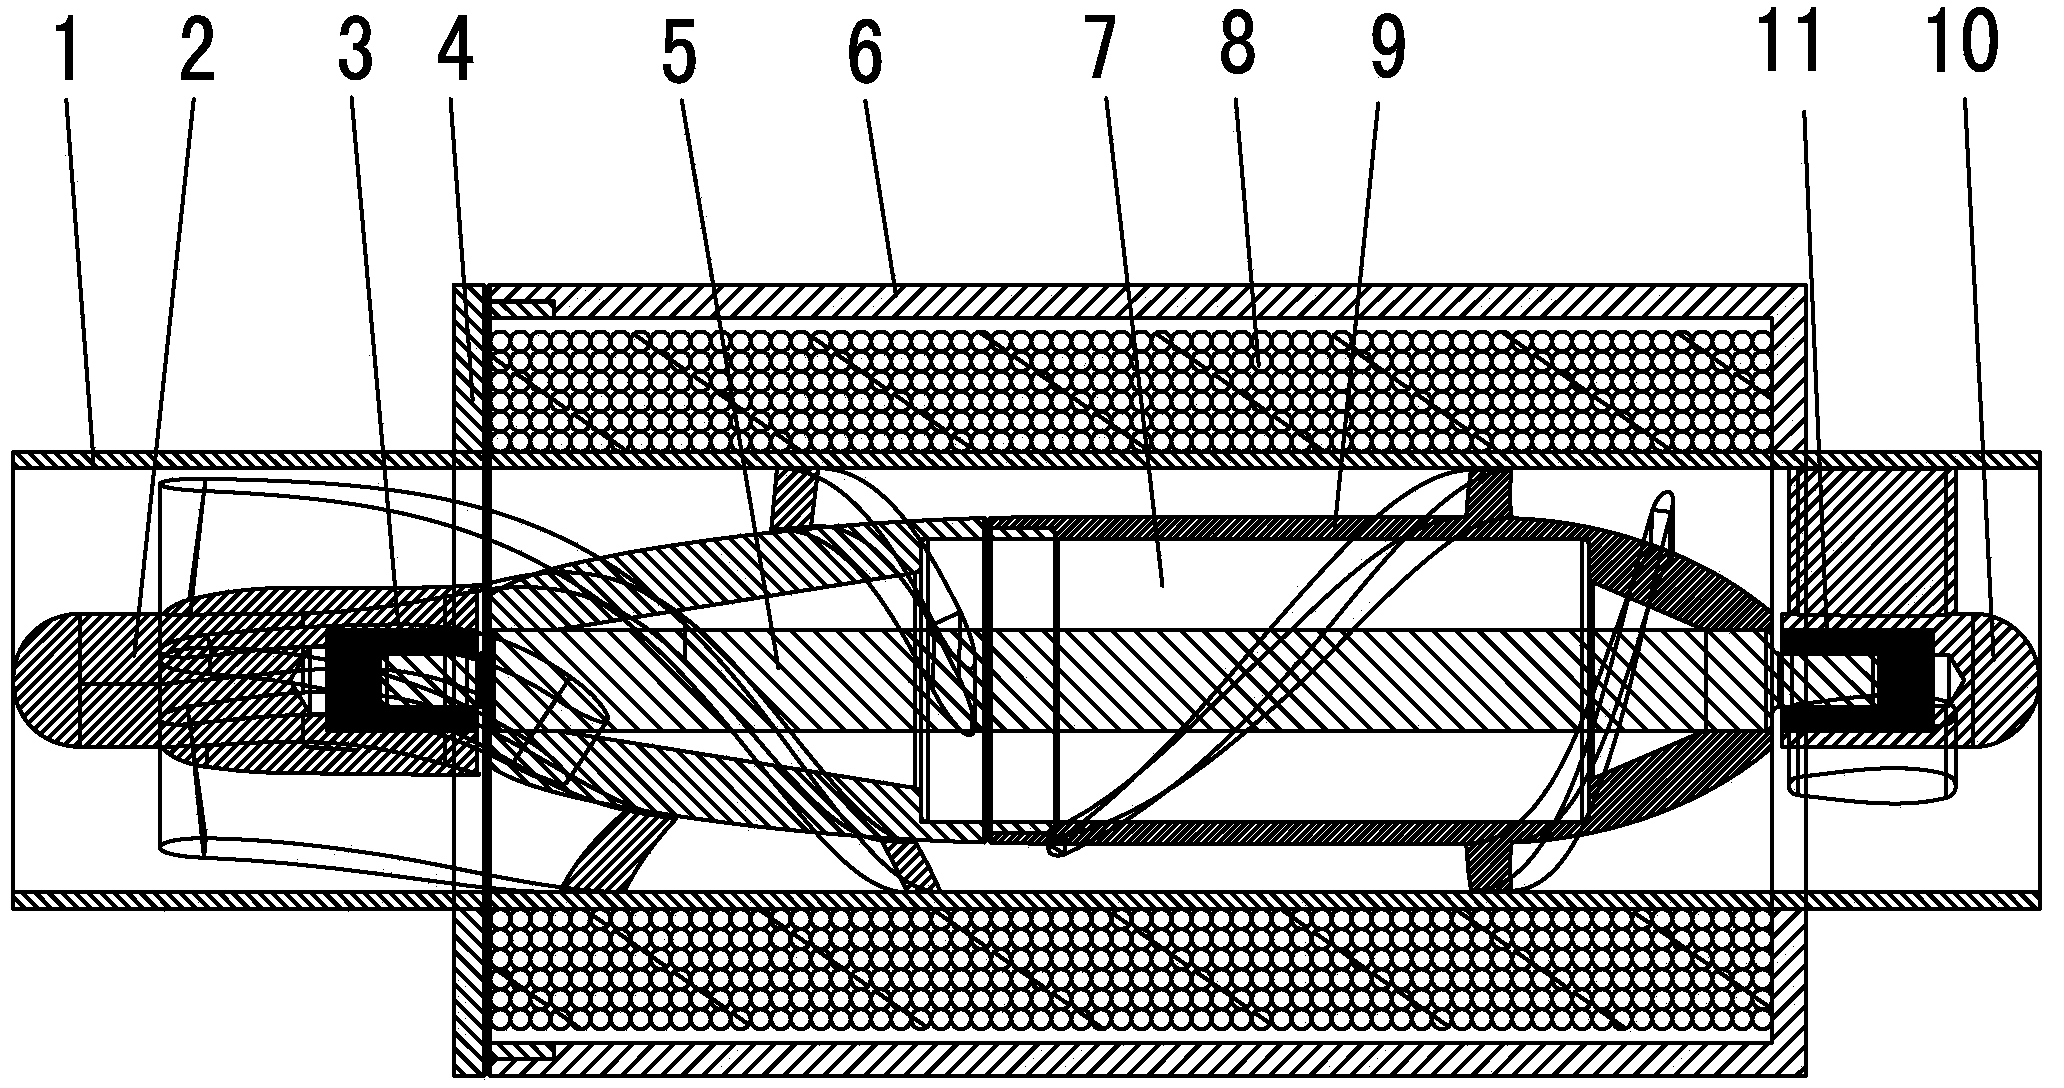 Half-blade-rotor-type axial flow blood pump